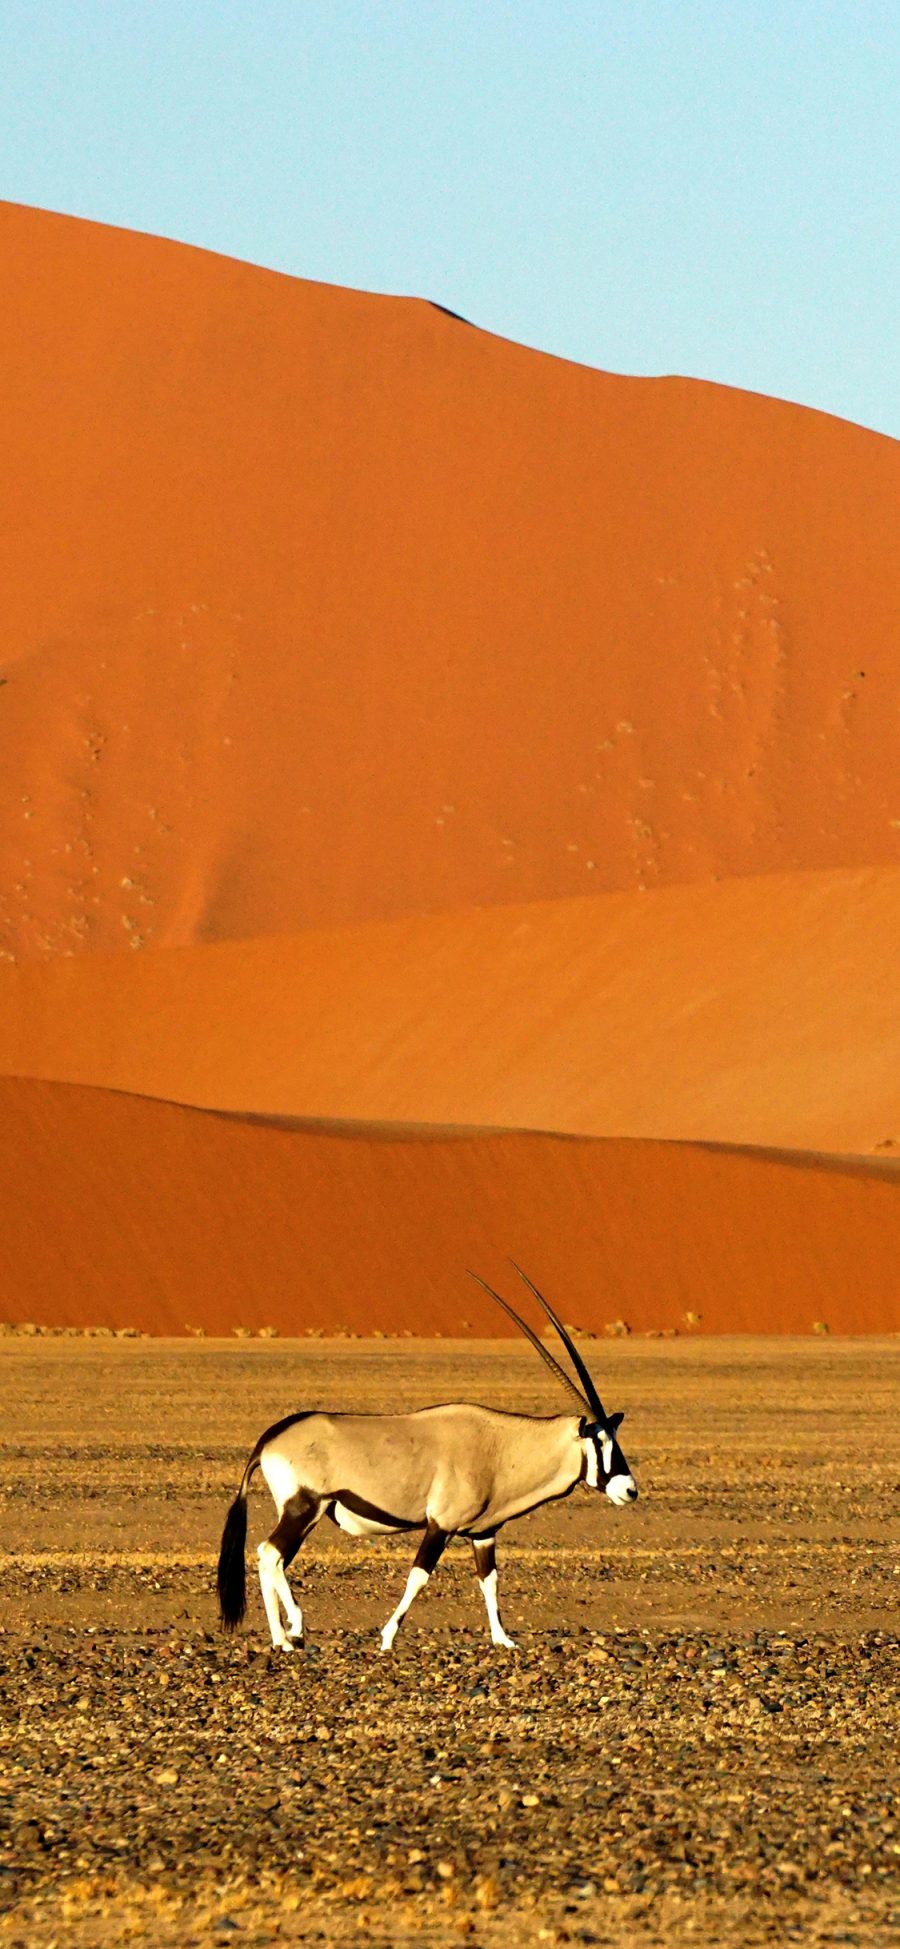 [2436×1125]非洲 沙漠 大羚羊 苹果手机壁纸图片